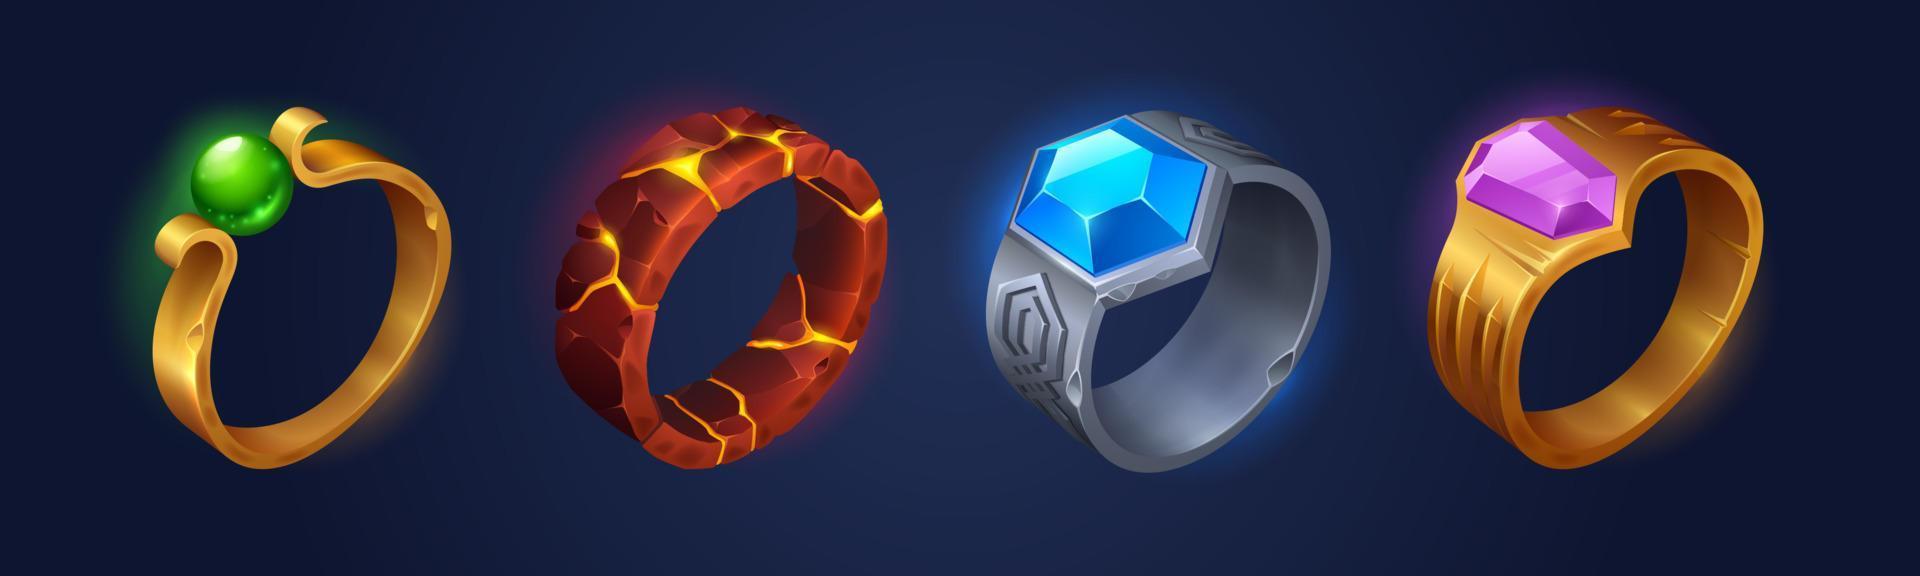 anillos mágicos de fantasía con gemas y fuego en el interior vector